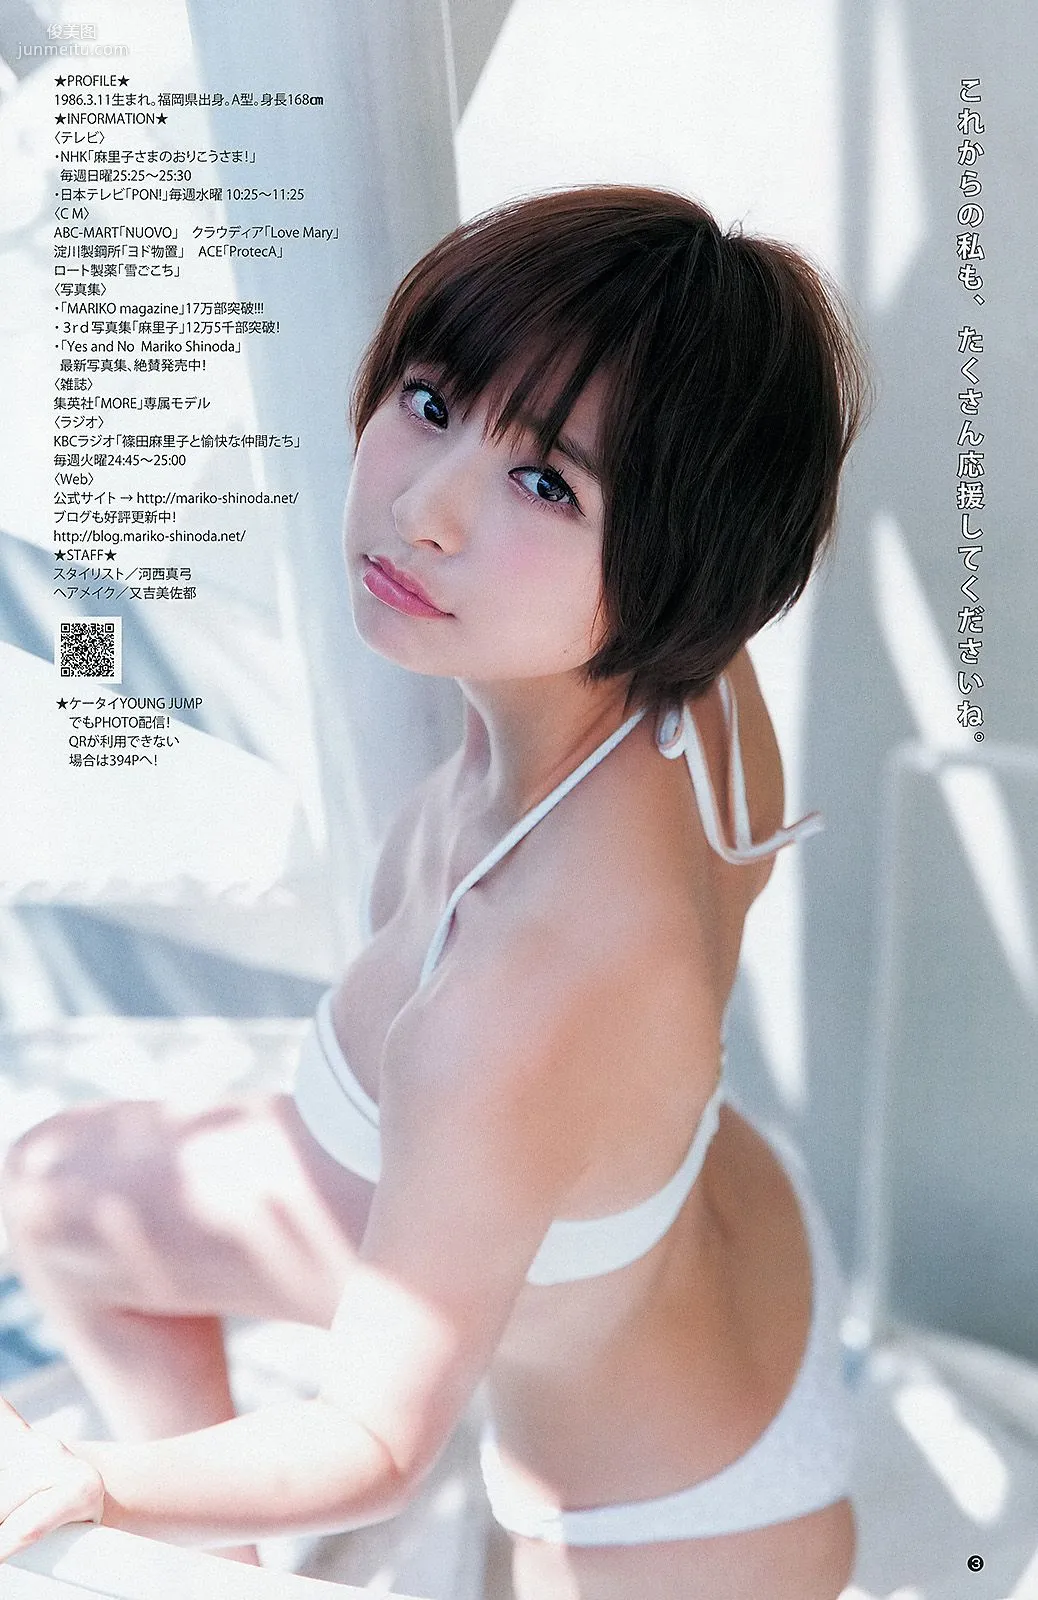 篠田麻里子 アオハルガールズ 中条あやみ [Weekly Young Jump] 2013年No.36-37 写真杂志11